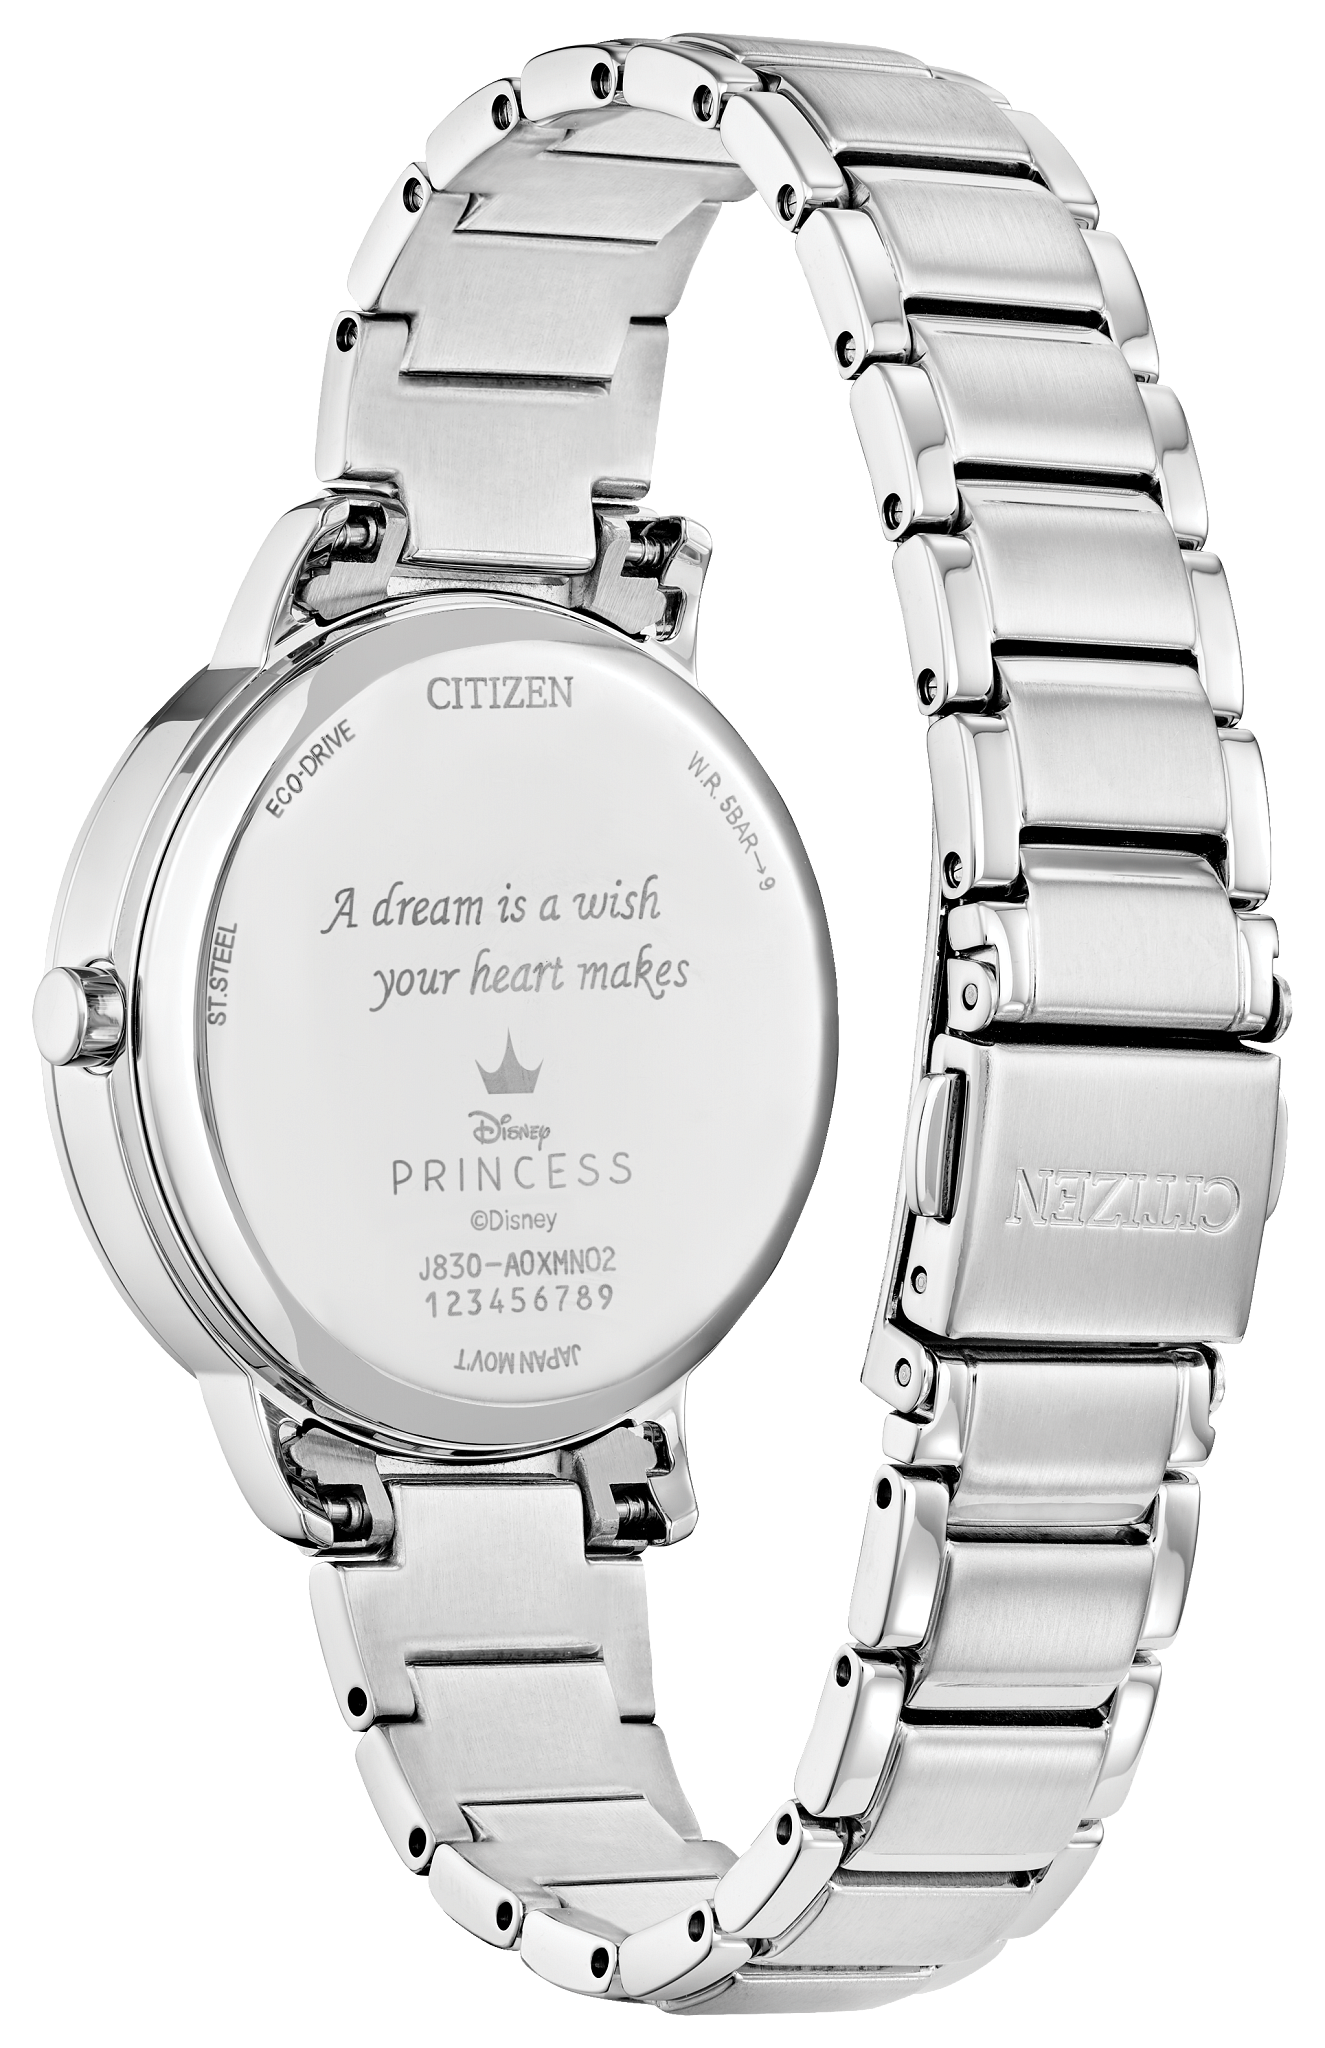 Vintage Cinderella Watch 1950s TIMEX | eBay